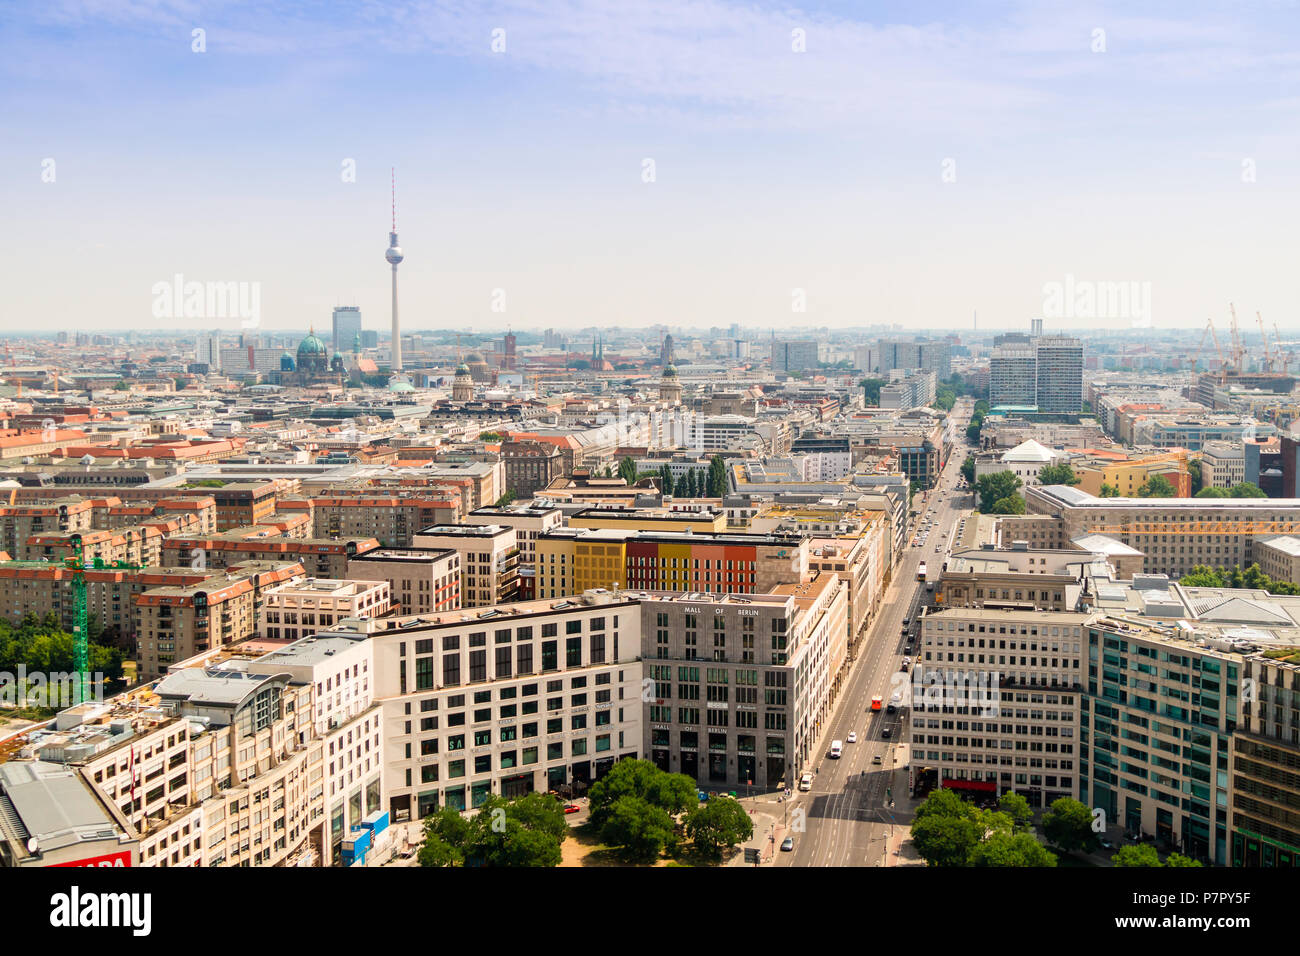 Vista aerea della Leipziger street, una delle strade principali di Berlino, si connette a ovest e a est. Foto Stock